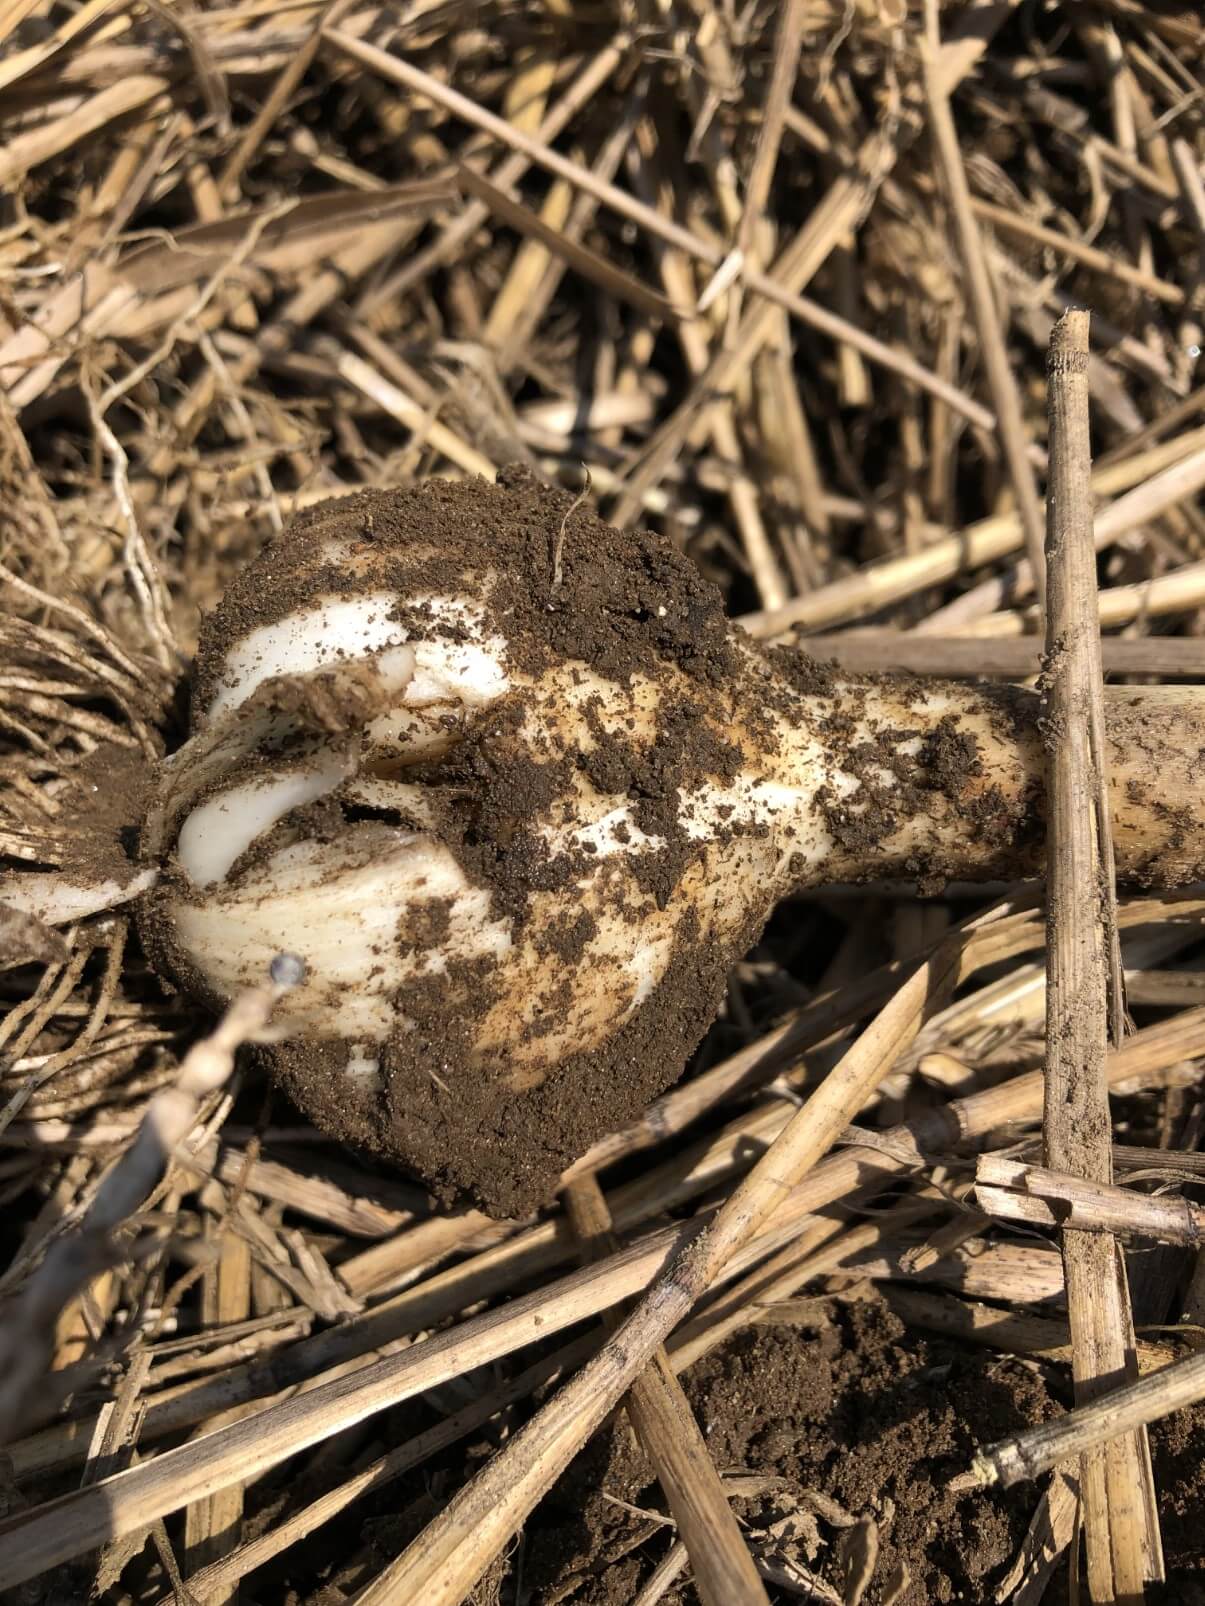 garlic cloves damaged during harvest